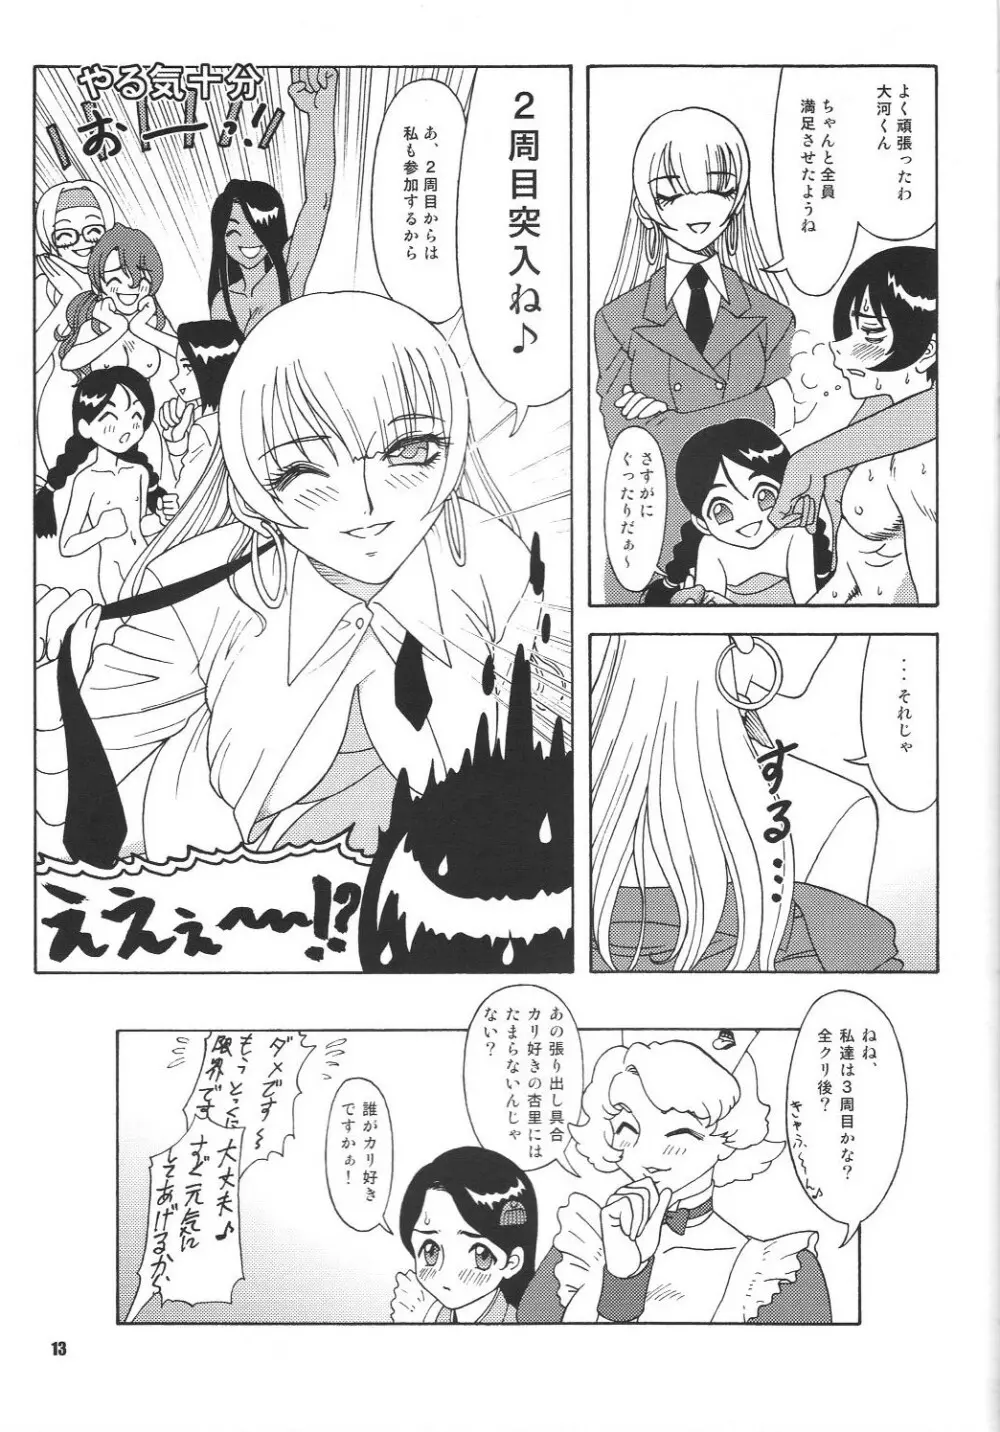 Fujishima Spirits vol.6 12ページ